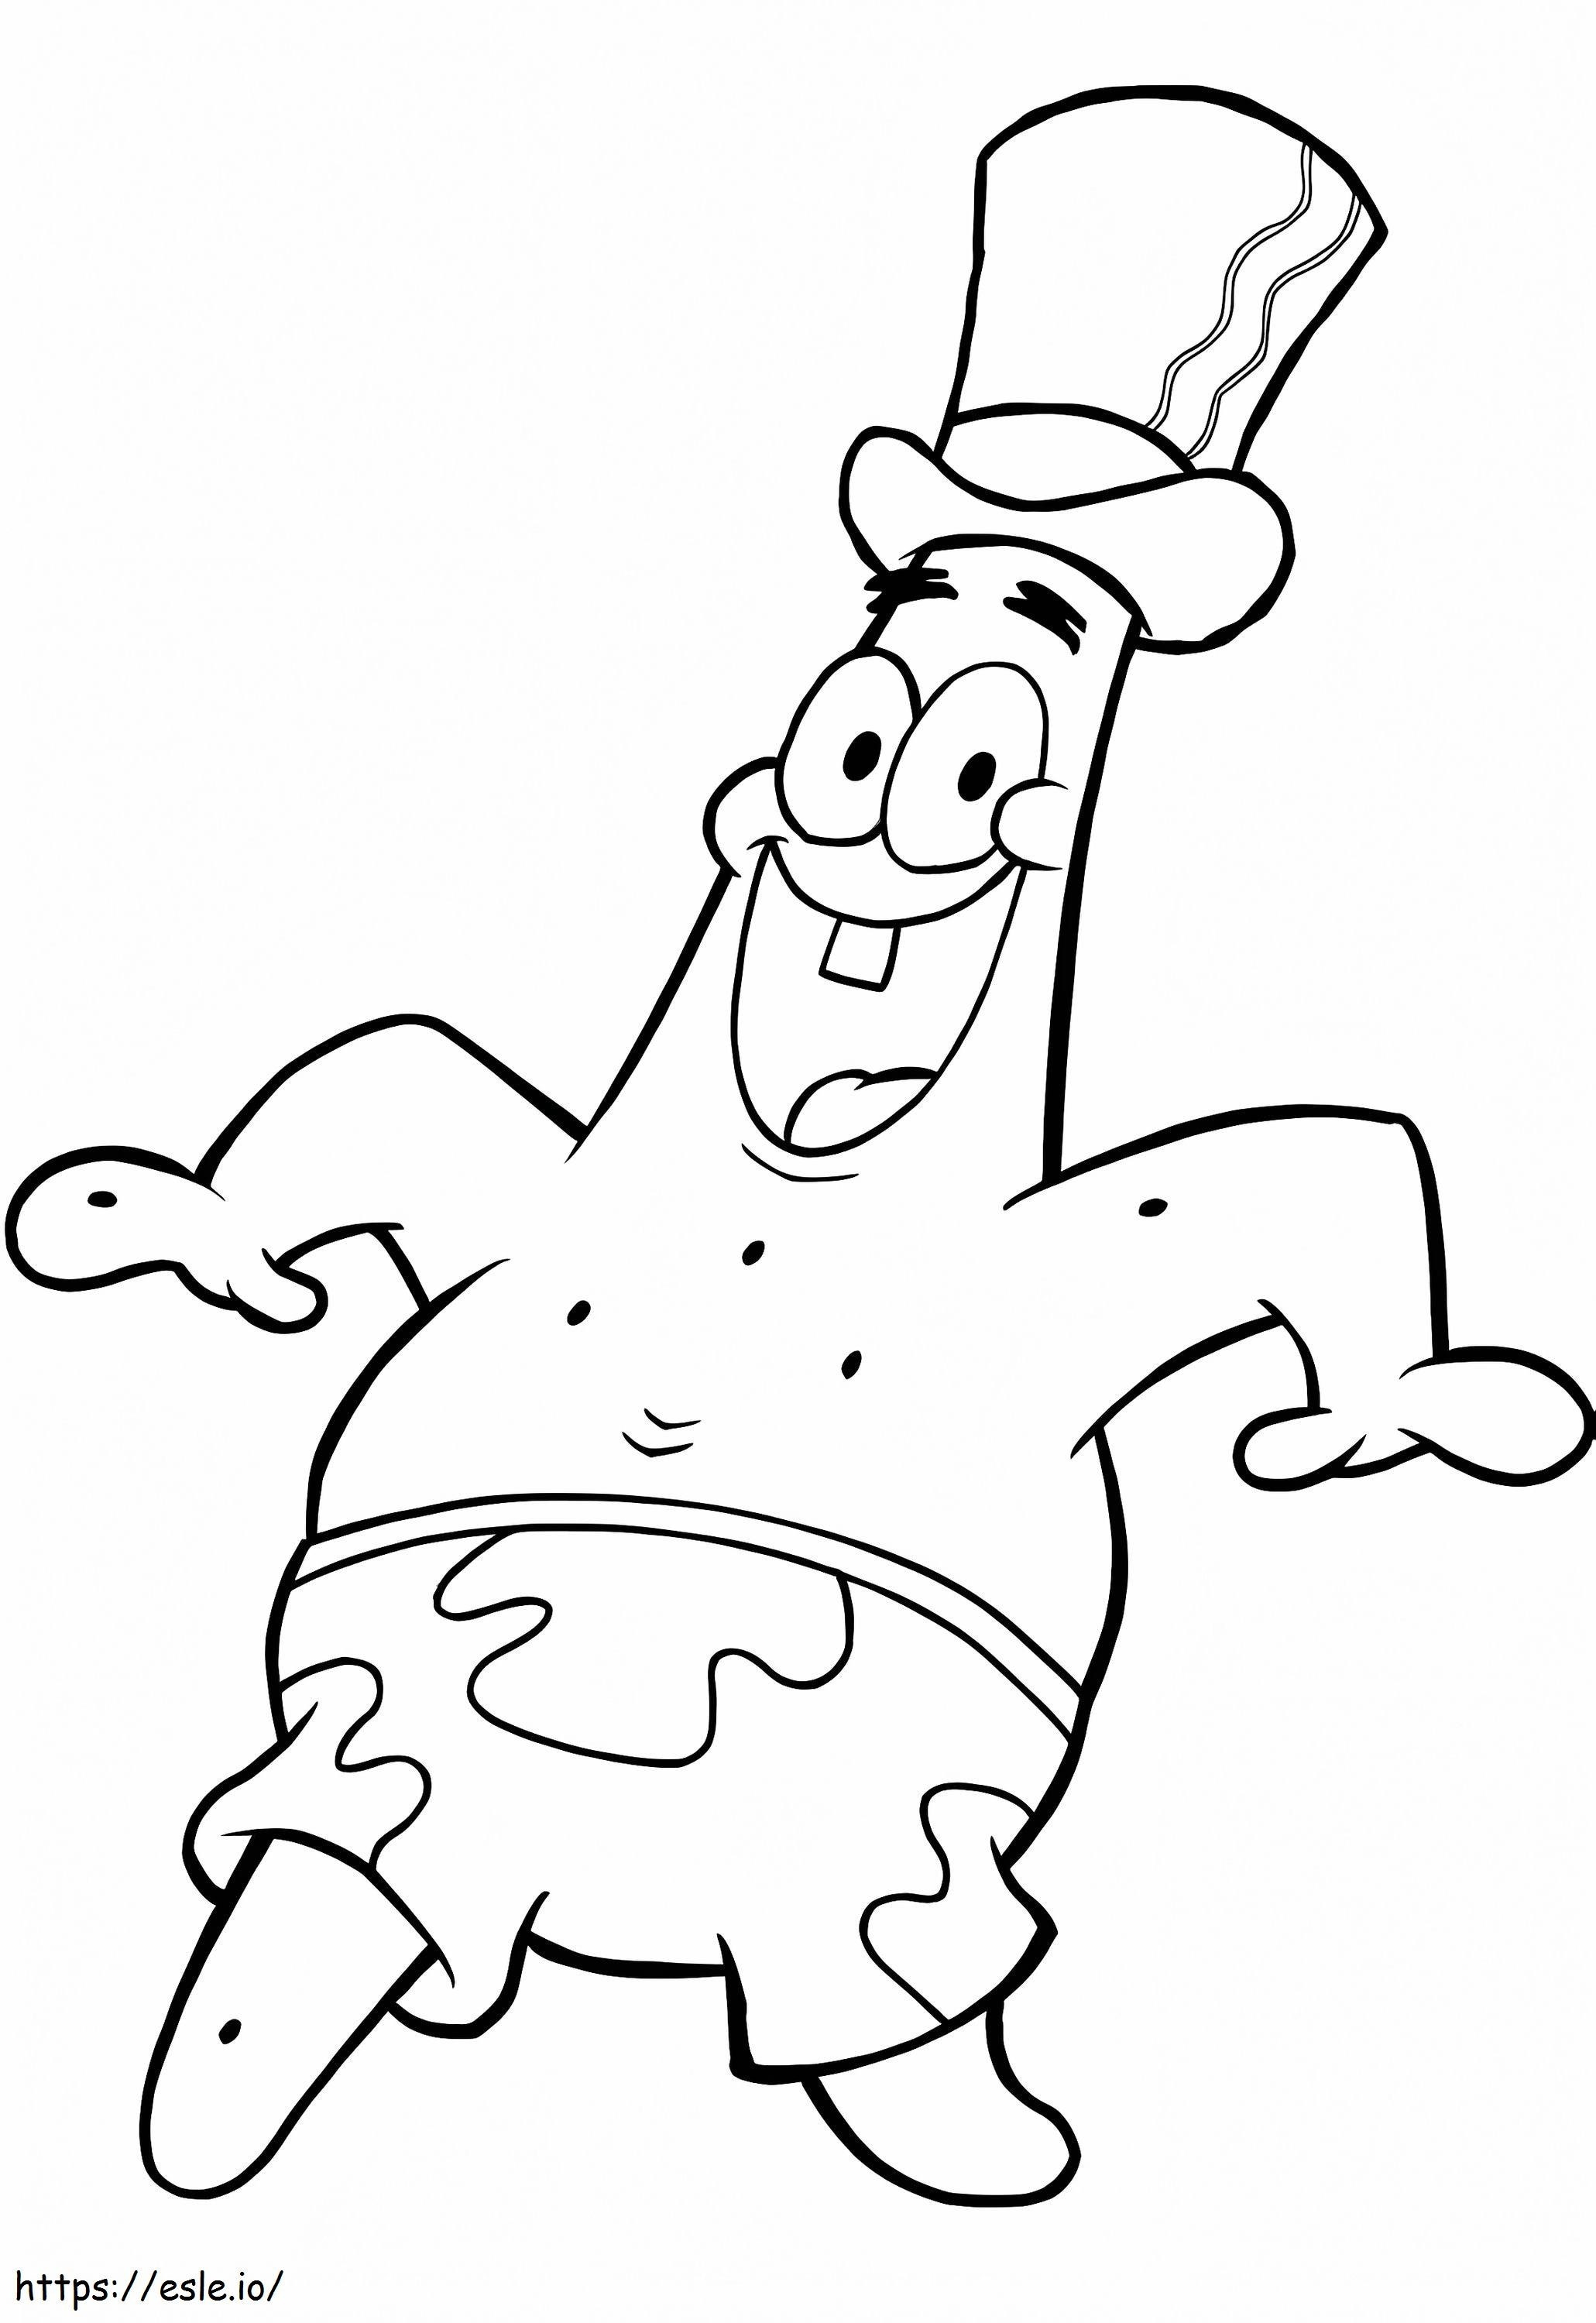 Patrick Bintang Dengan Topi Gambar Mewarnai